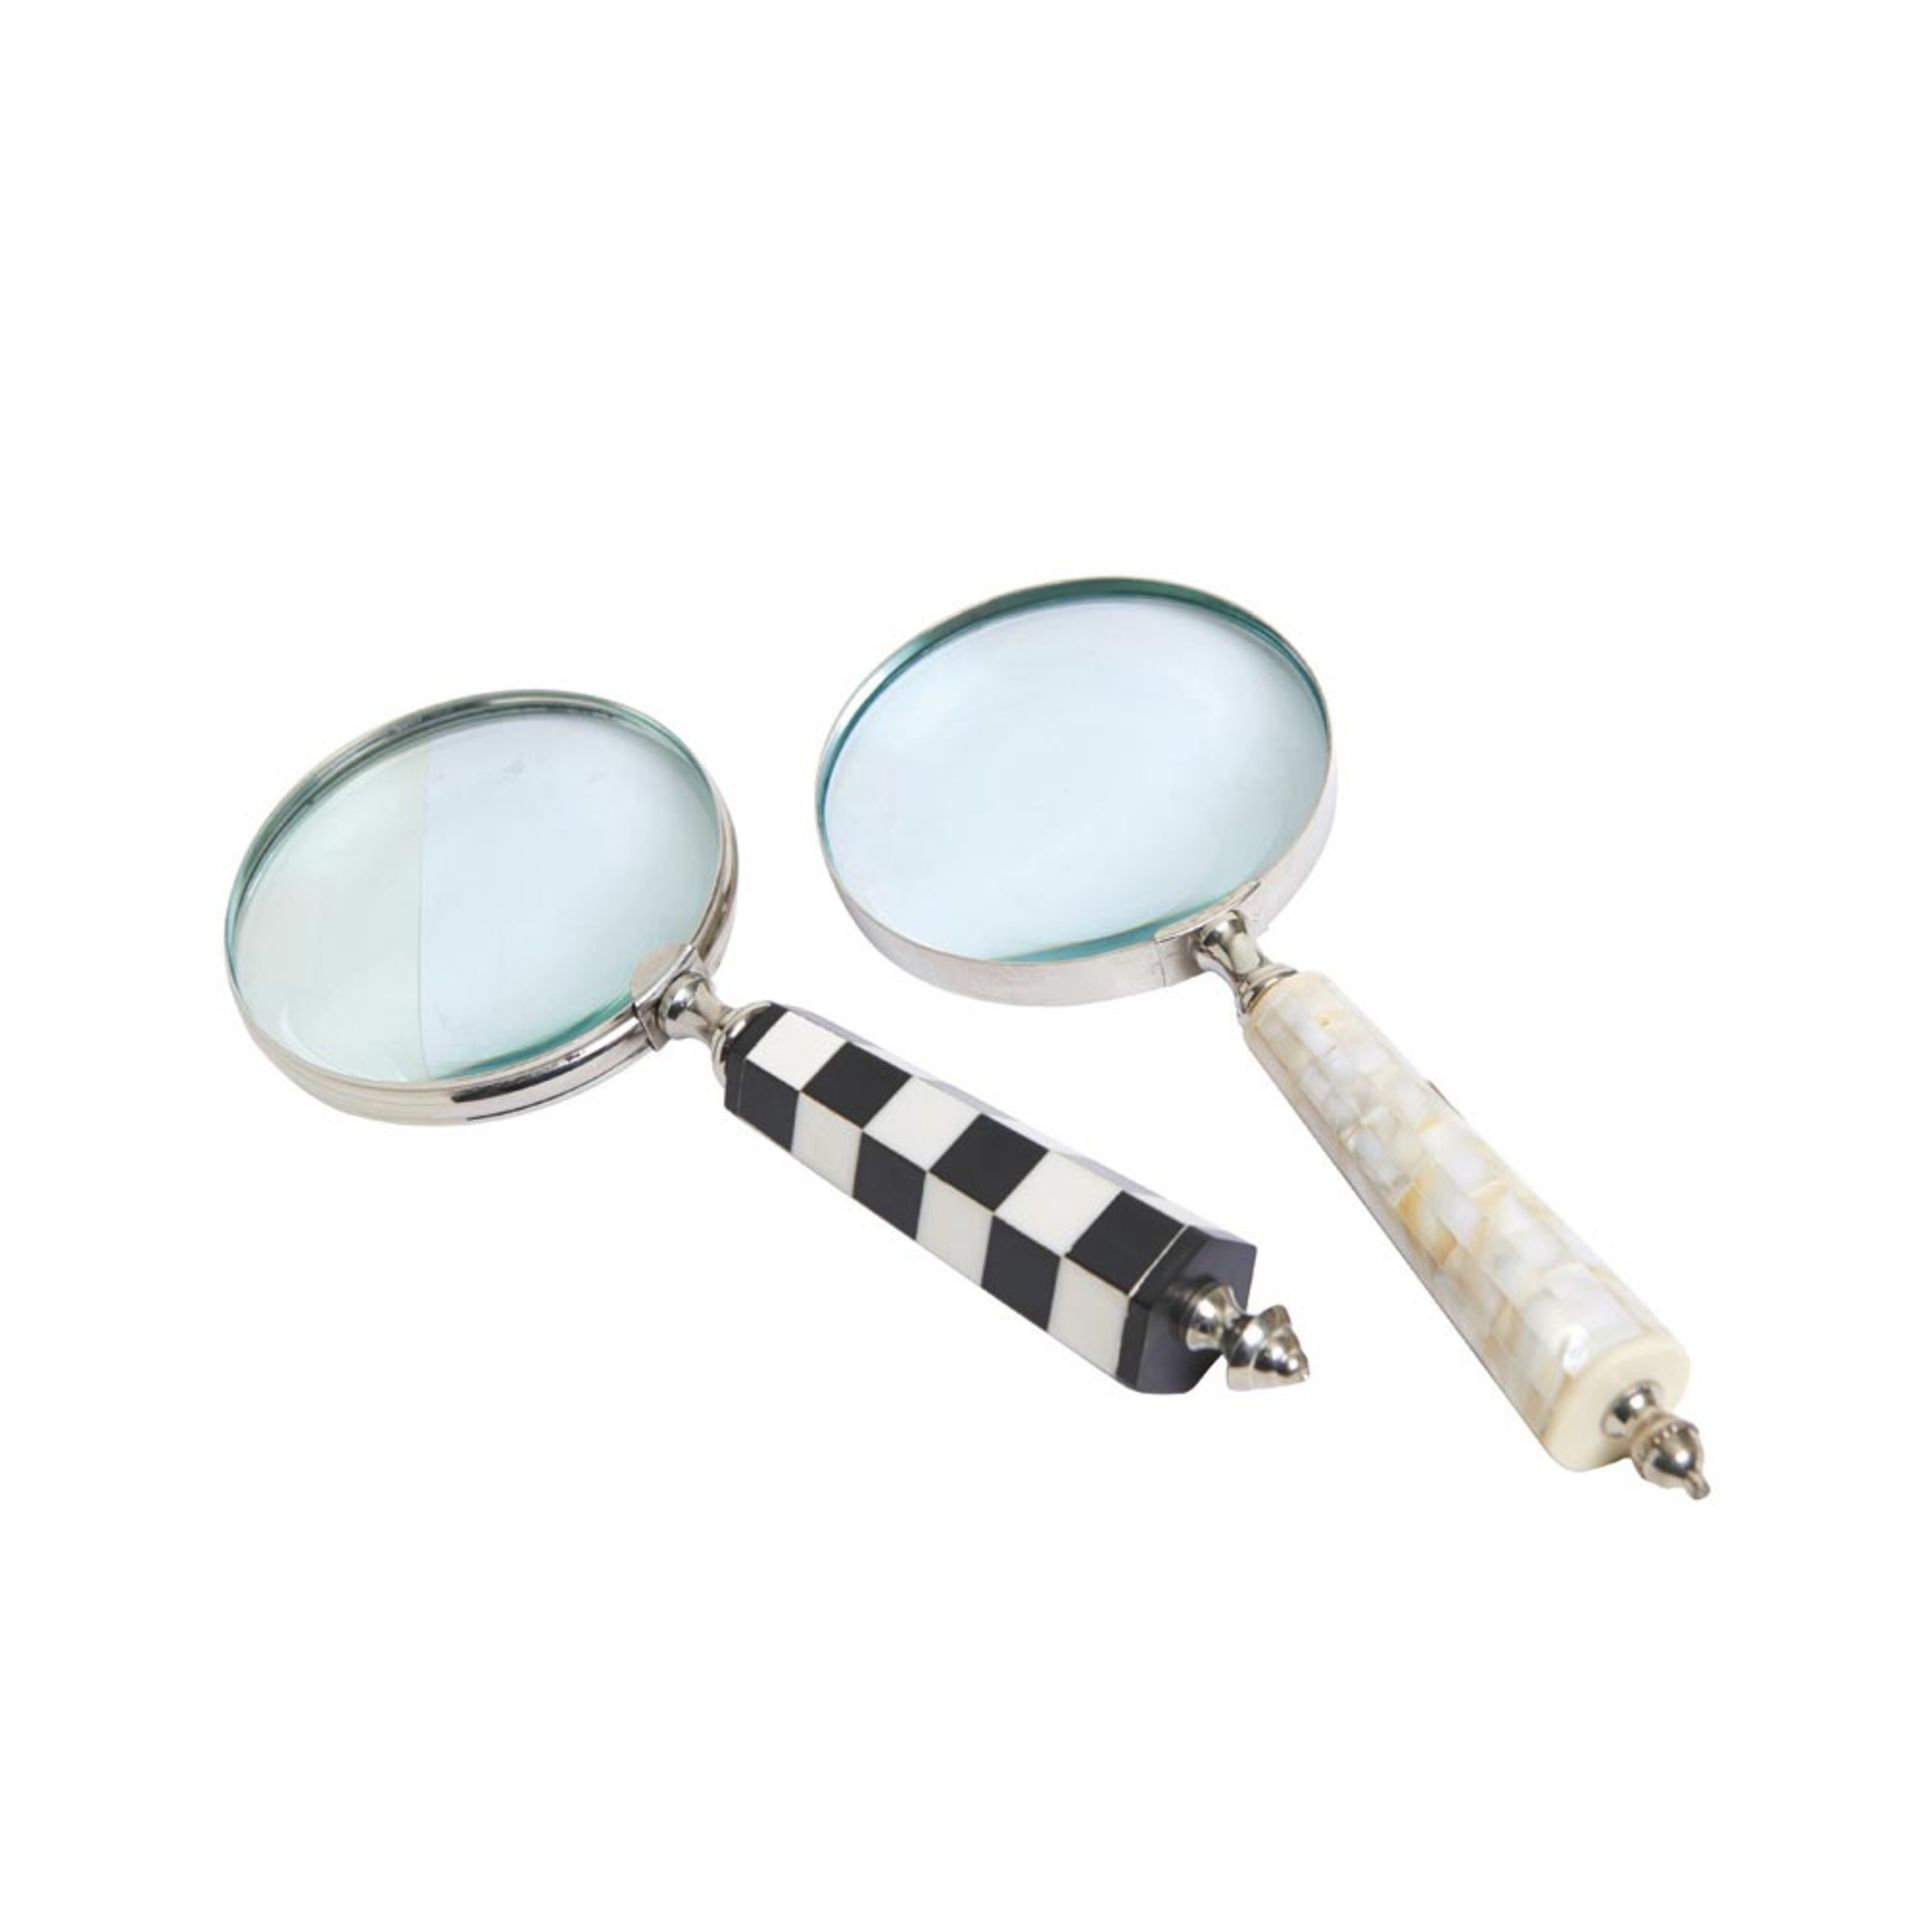 Metal, mother of pearl, ebony and bone magnifying glasses. Lote de dos lupas en metal y plaqué en - Bild 3 aus 3